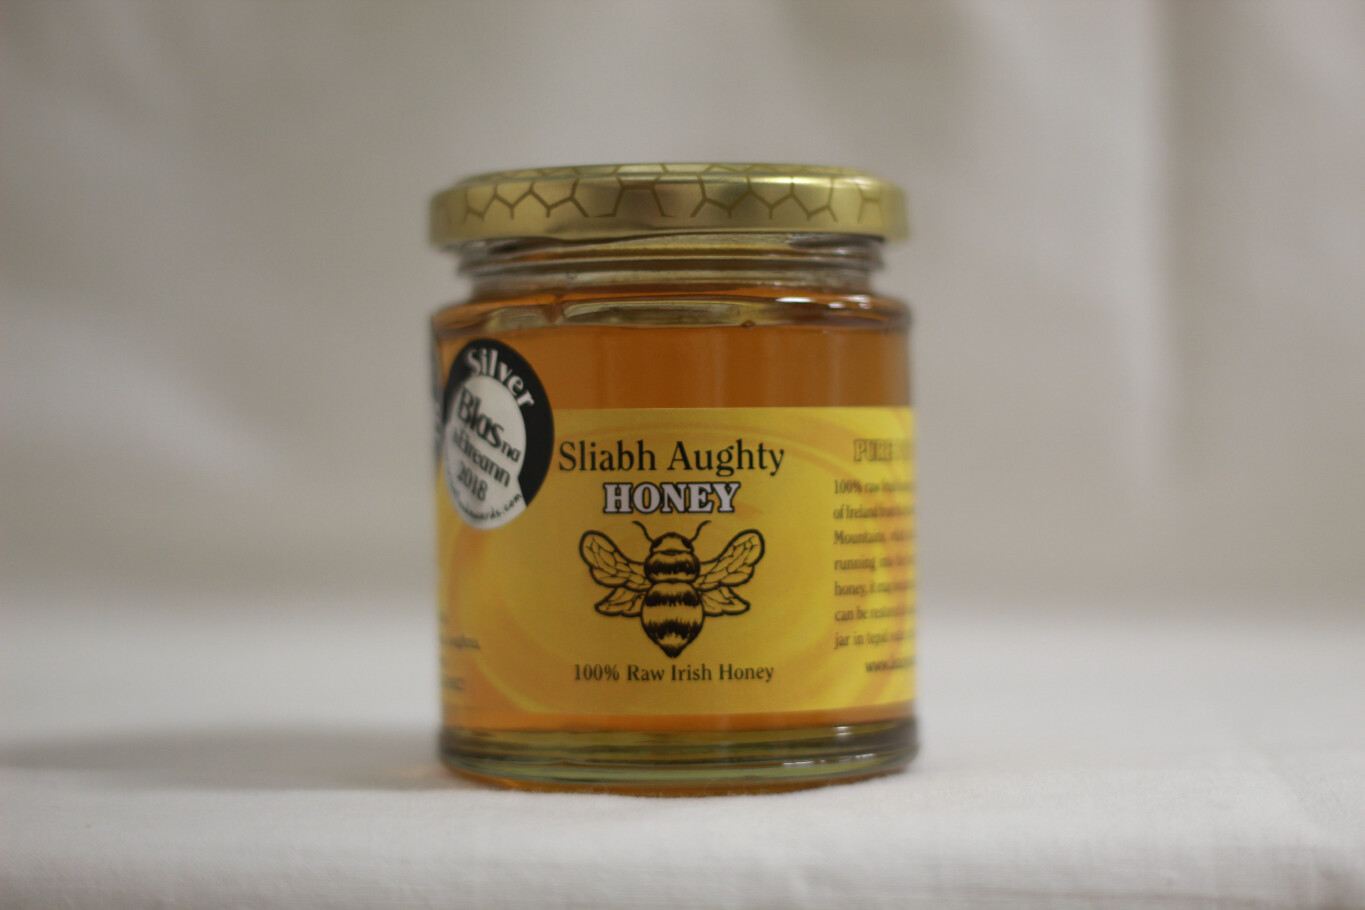 Sliabh Aughty Honey